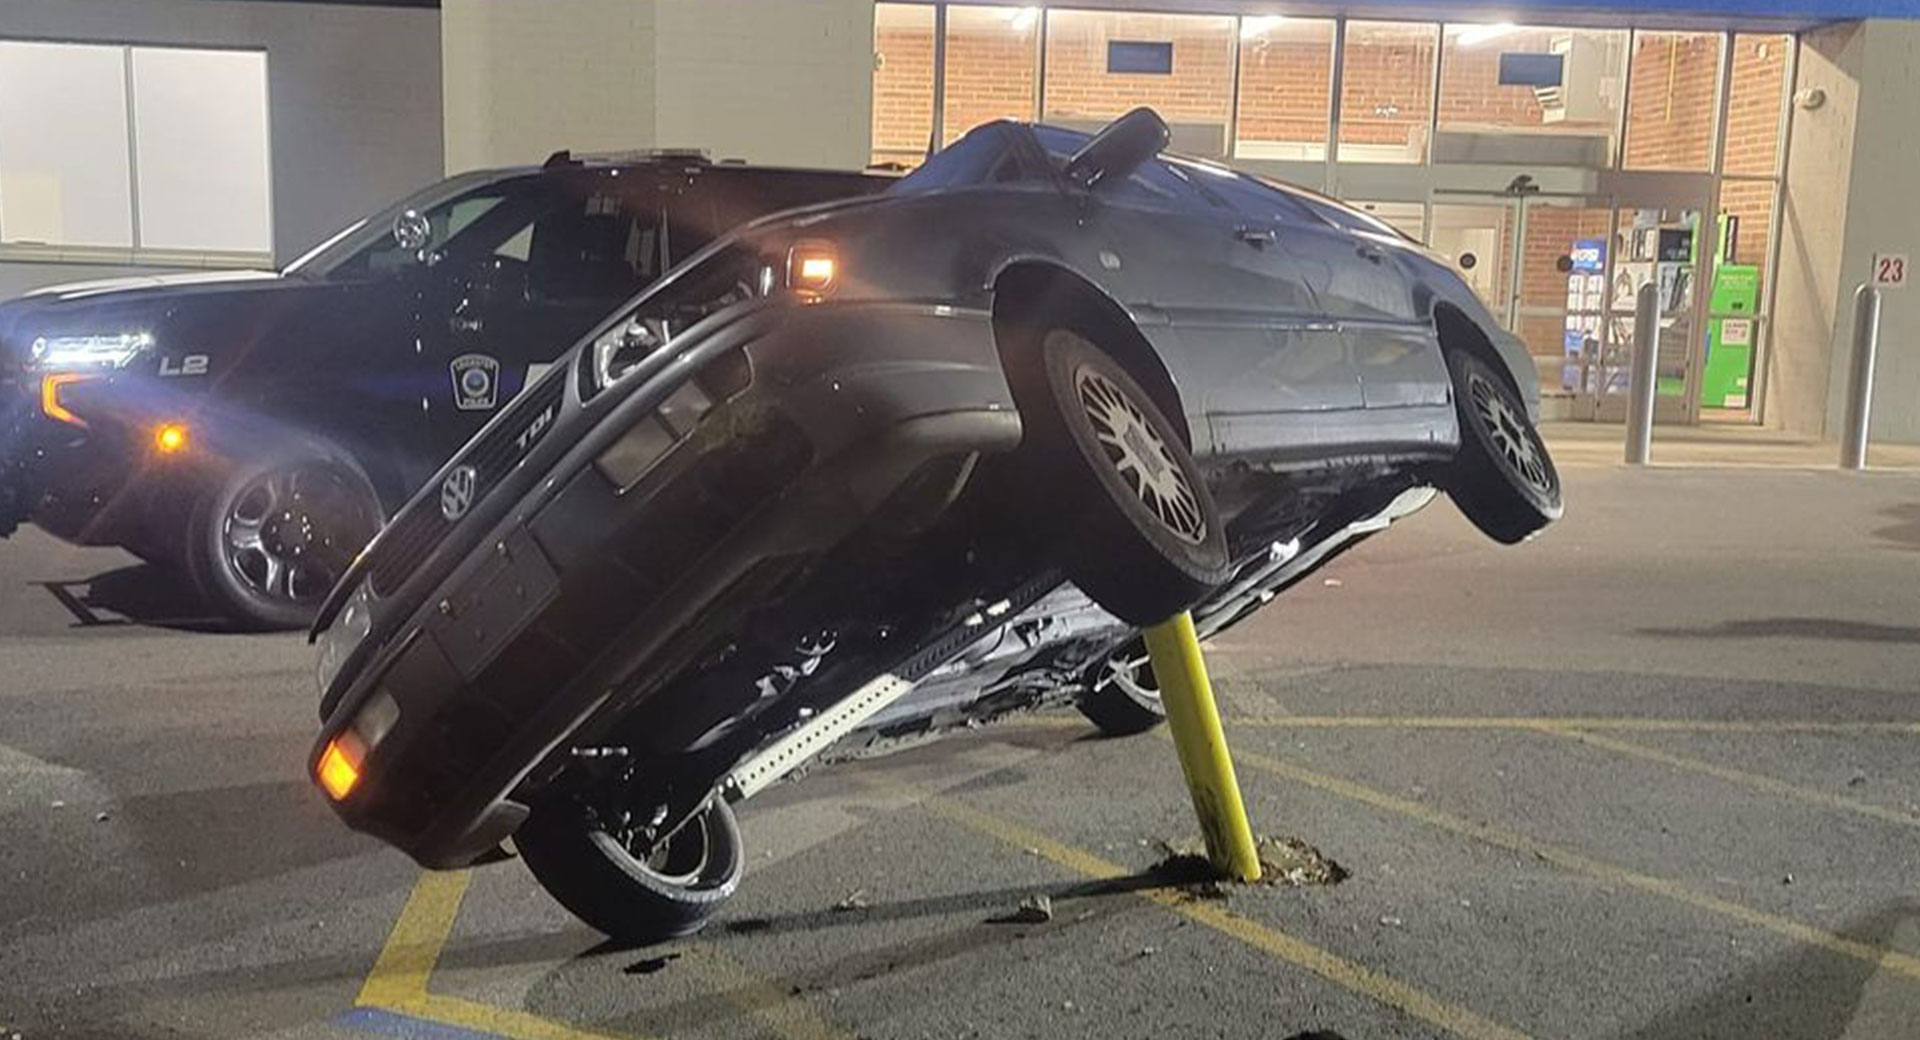 Comment ce conducteur de masse a-t-il empalé sa VW sur un poteau de parking Walmart ?